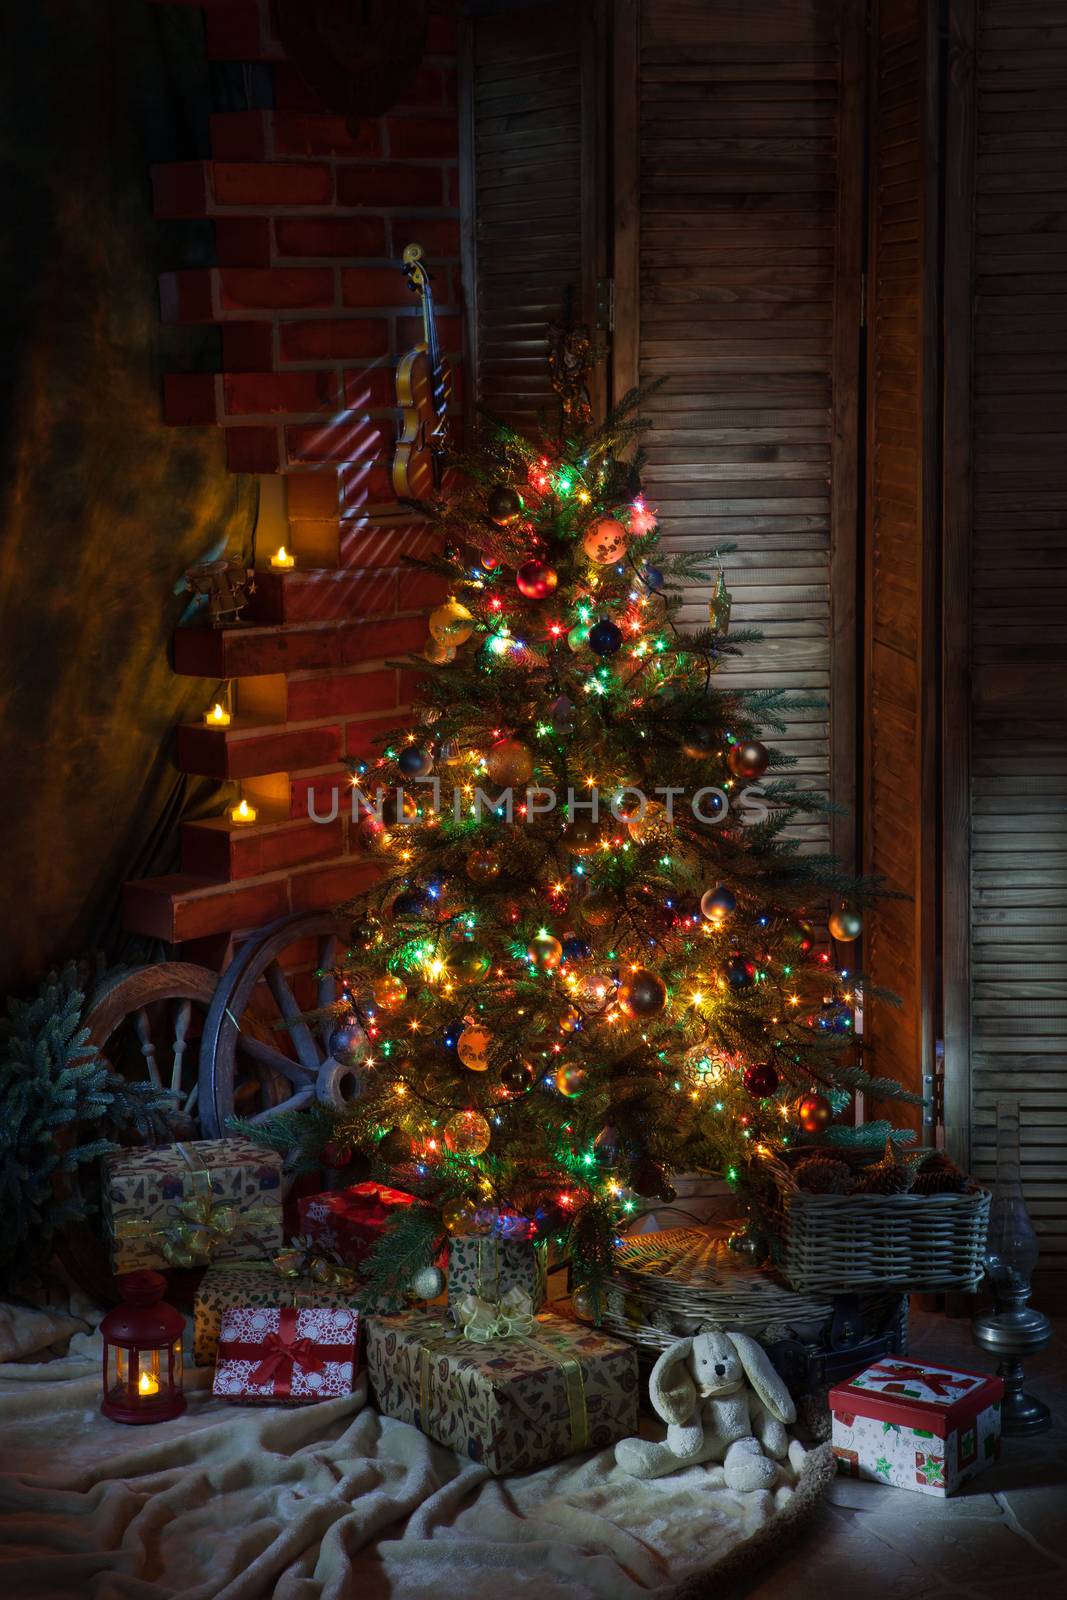 Christmas Still Live by Fotoskat